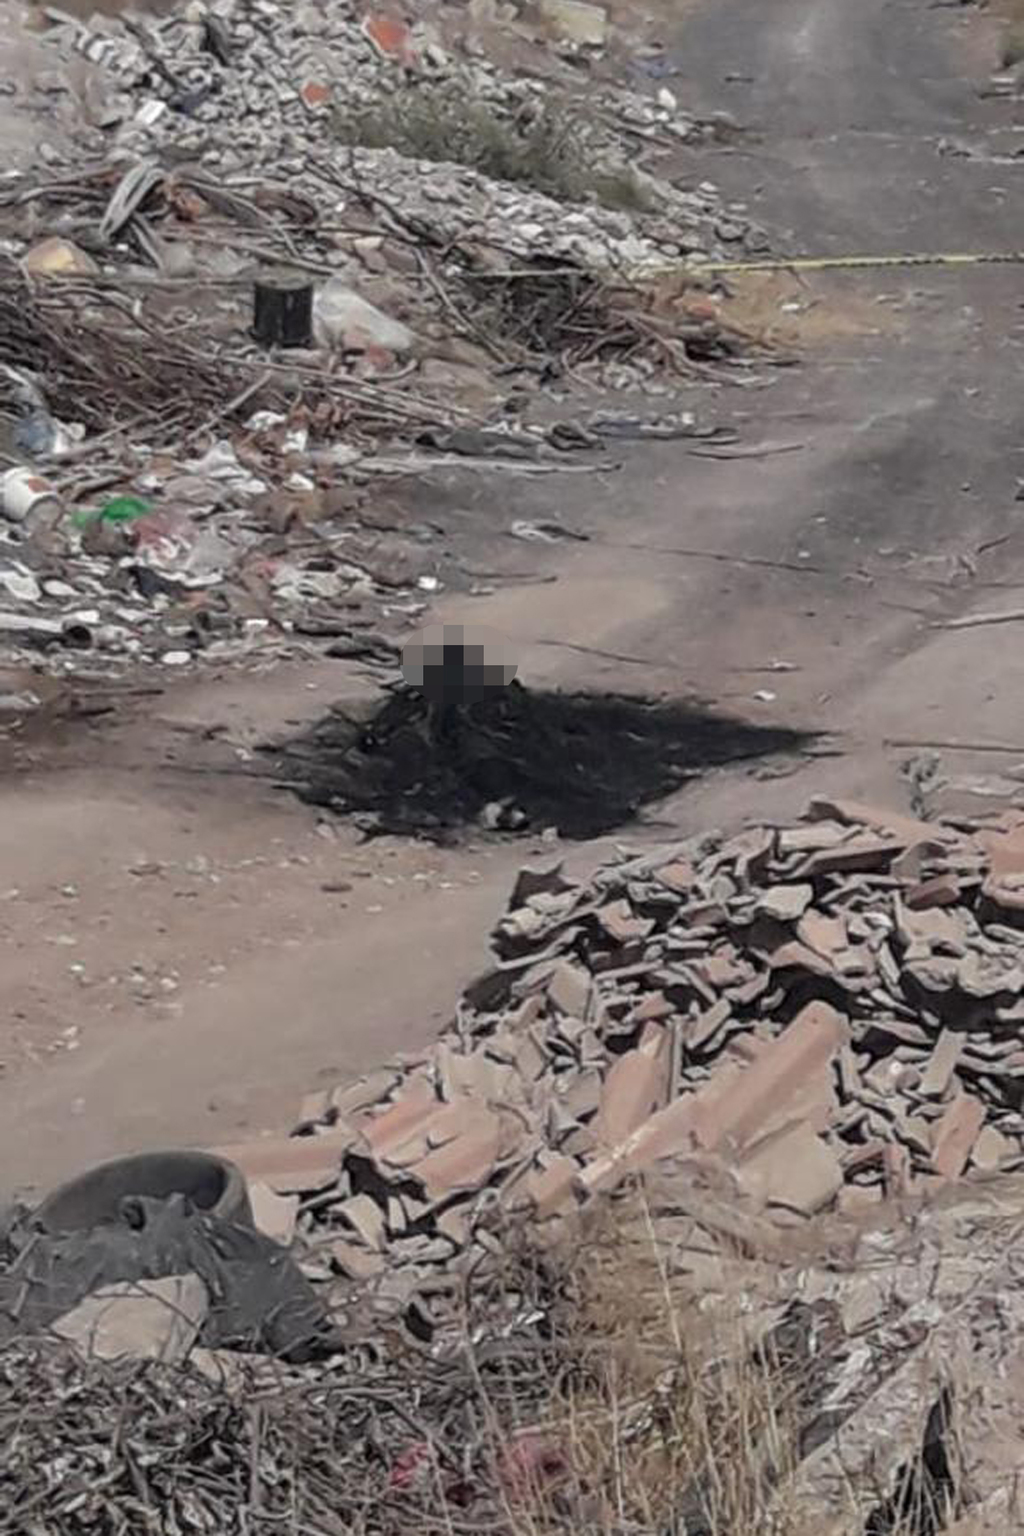 El cuerpo calcinado de una persona fue encontrado en un camino cercano al basurero del ejido Santa Fe, de la ciudad de Torreón, durante la mañana de este lunes.